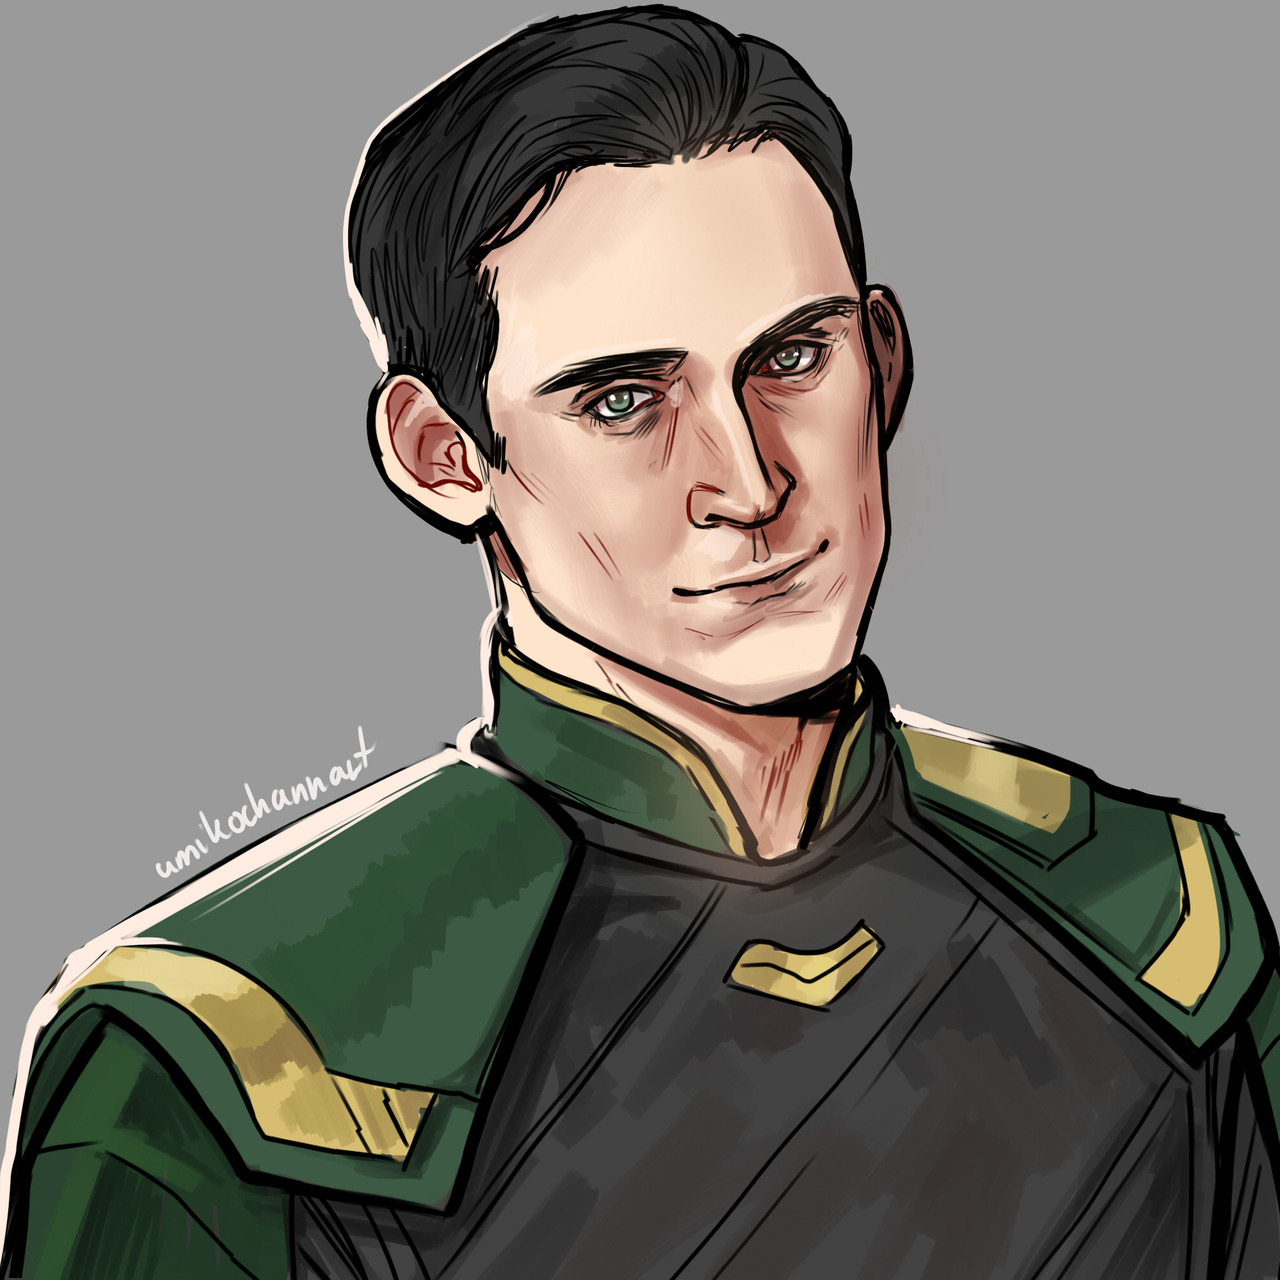 JACK YES — umikochannart: Someone suggested short-haired Loki...